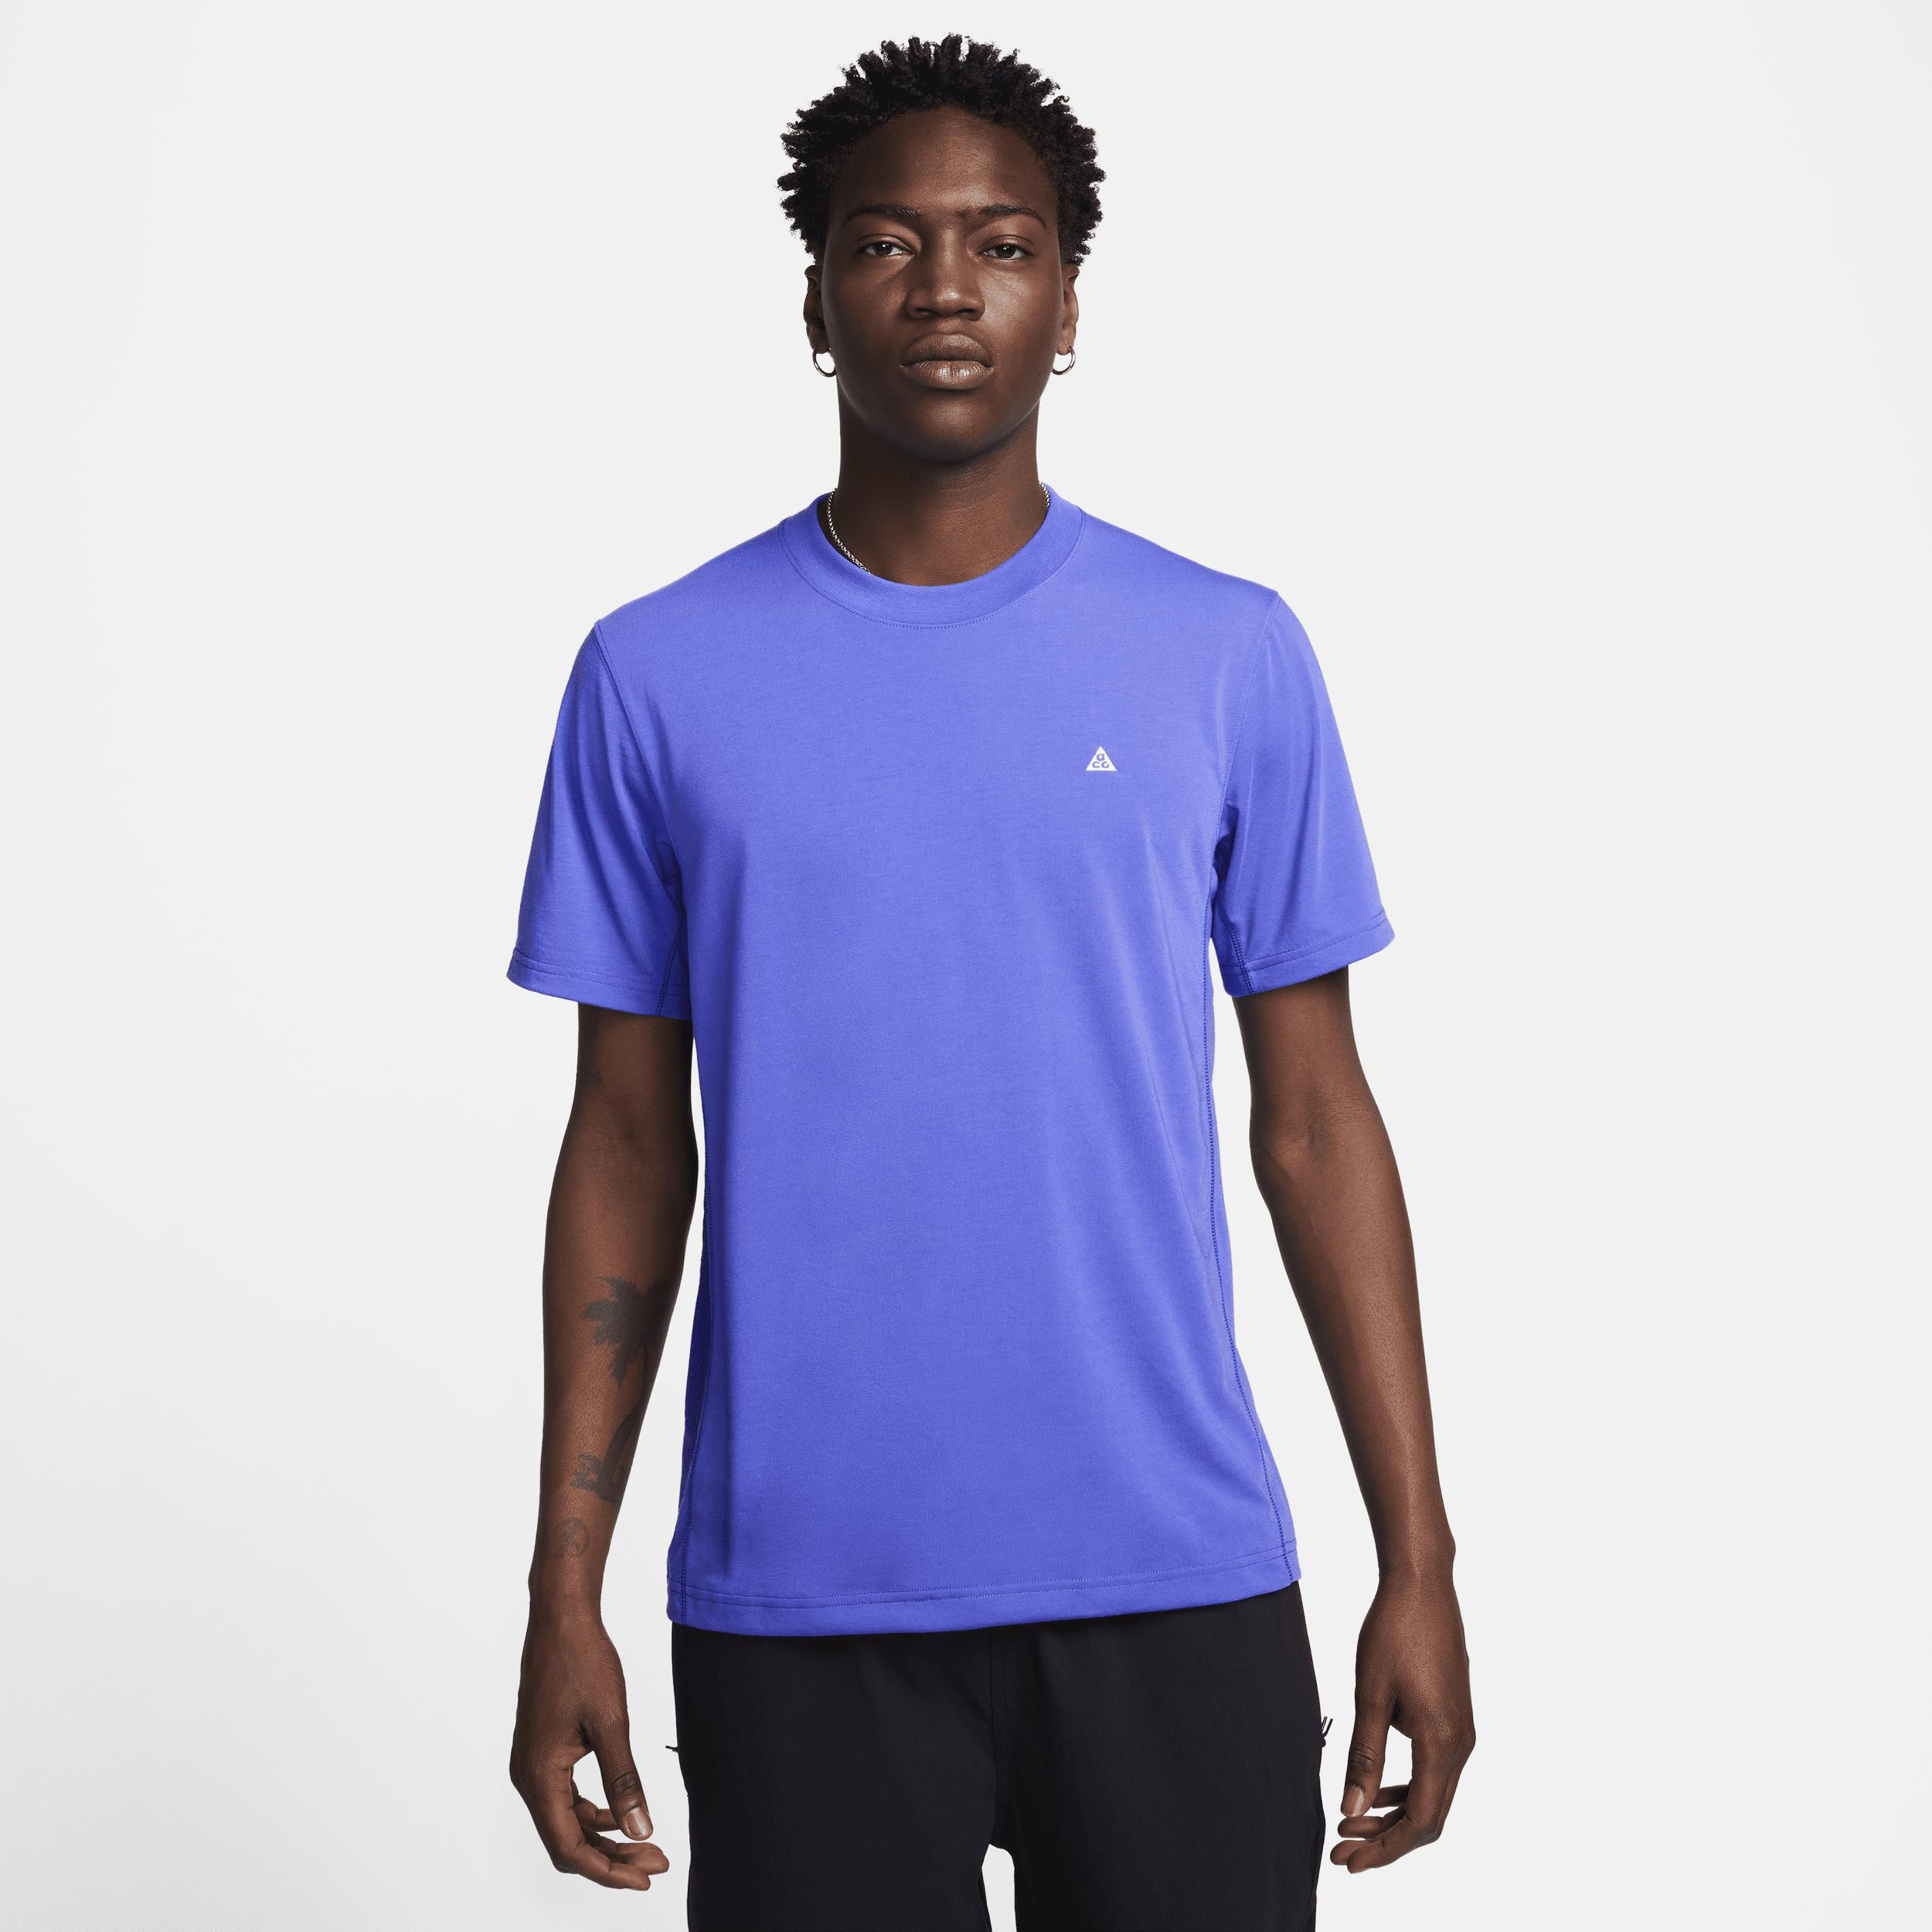 Nike Acg 'goat Rocks' Dri-fit Adv Uv Short-sleeve Top in Blue for Men